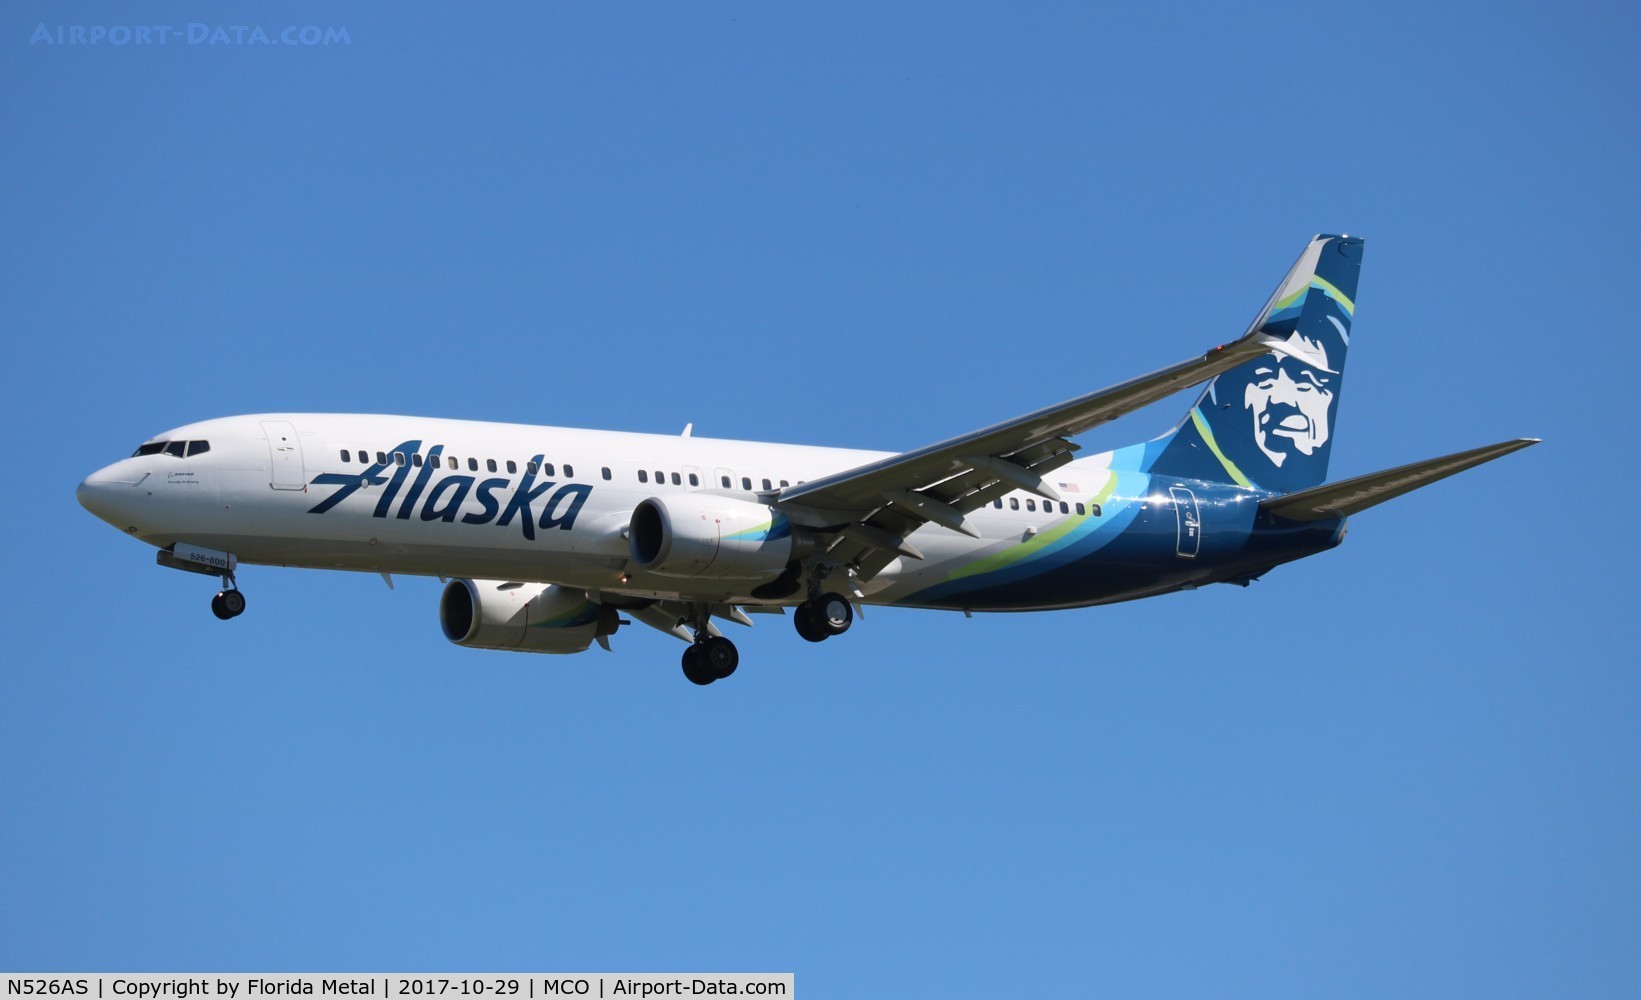 N526AS, 2009 Boeing 737-890 C/N 35196, Alaska